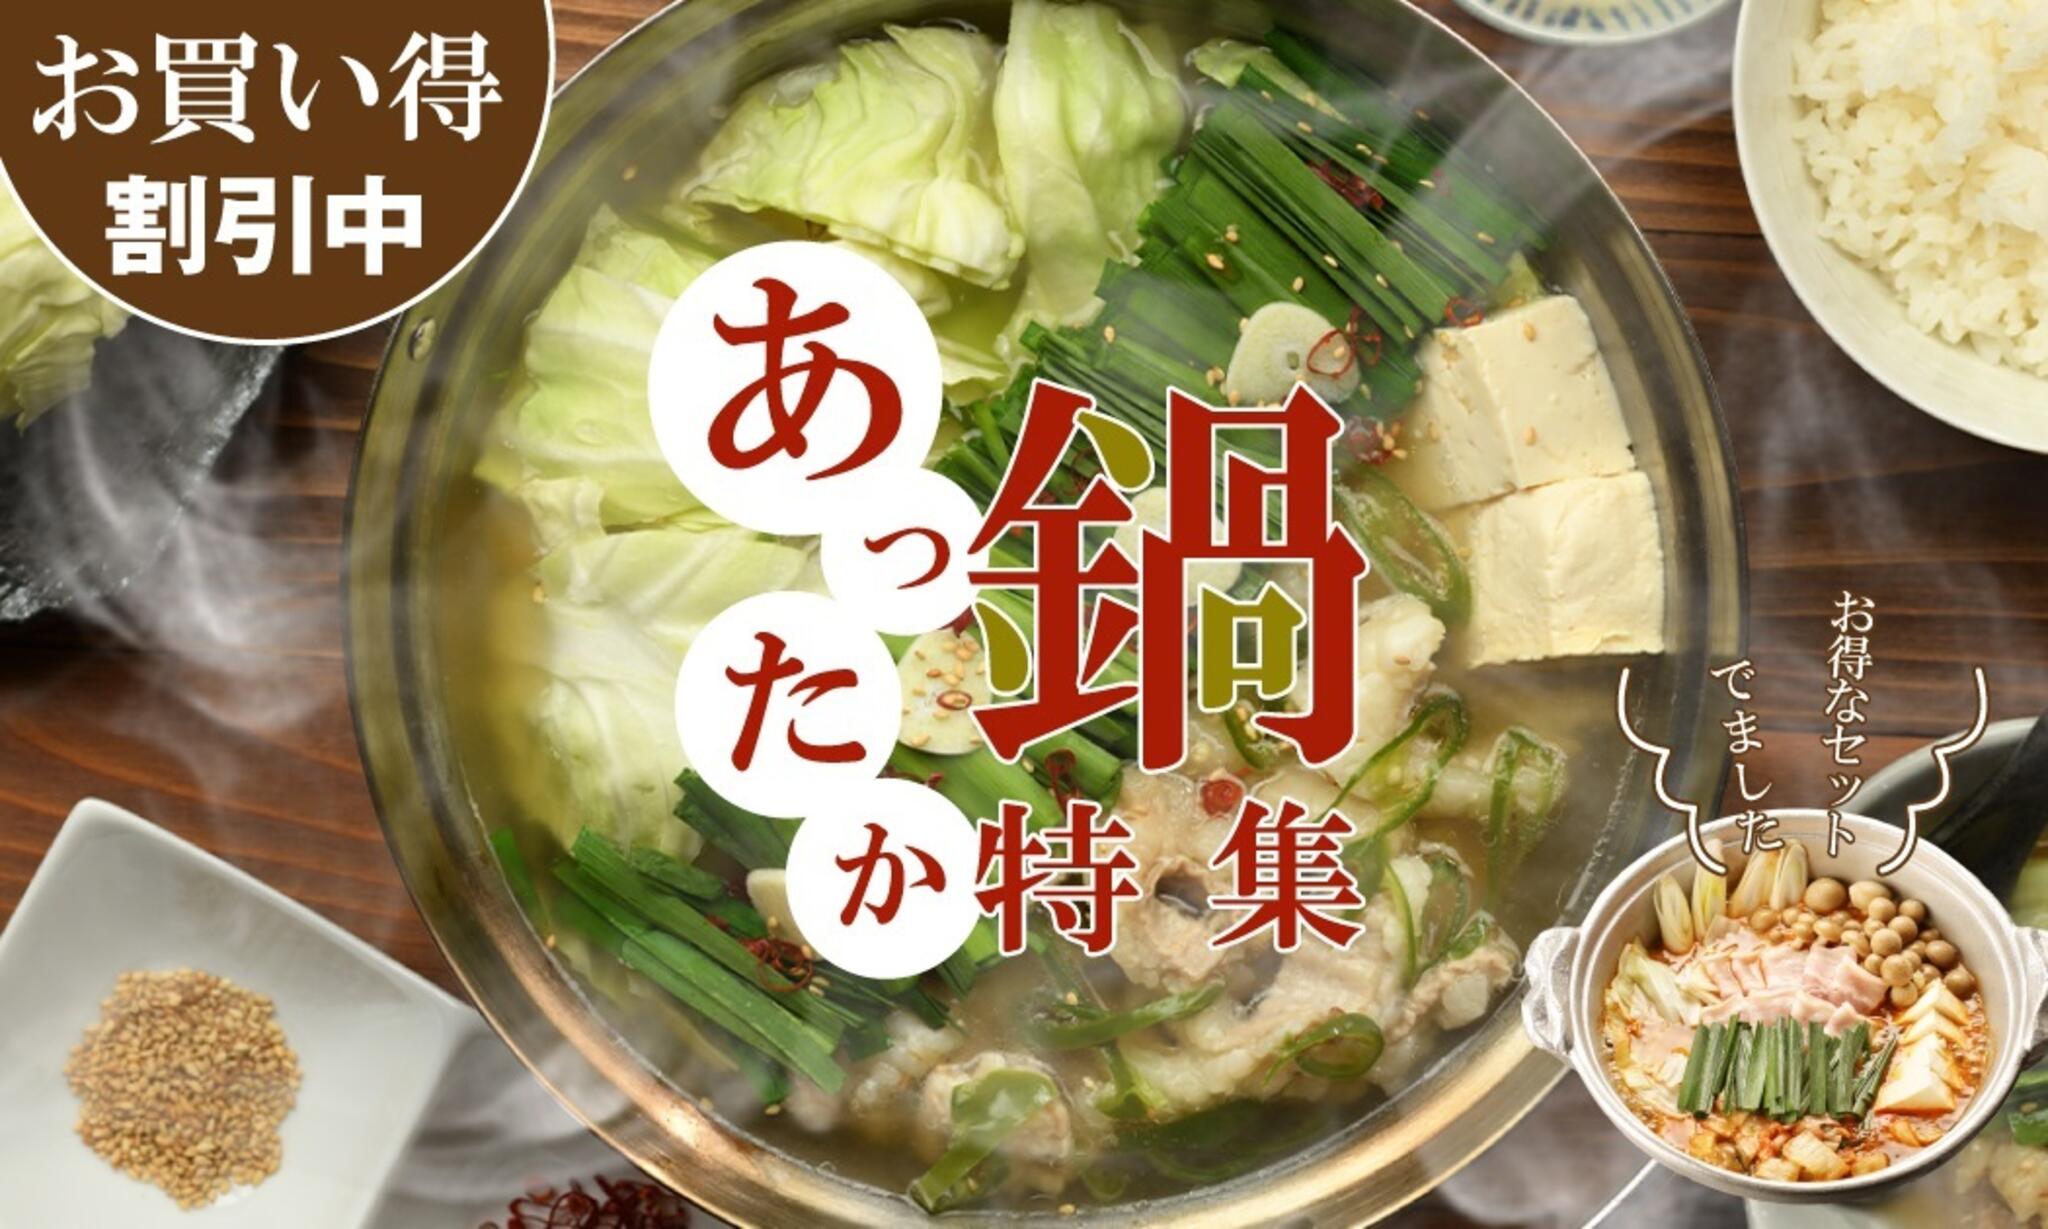 焼肉冷麺やまなか家 山王臨海店からのお知らせ(お家であったか鍋🍲新登場❕❕)に関する写真